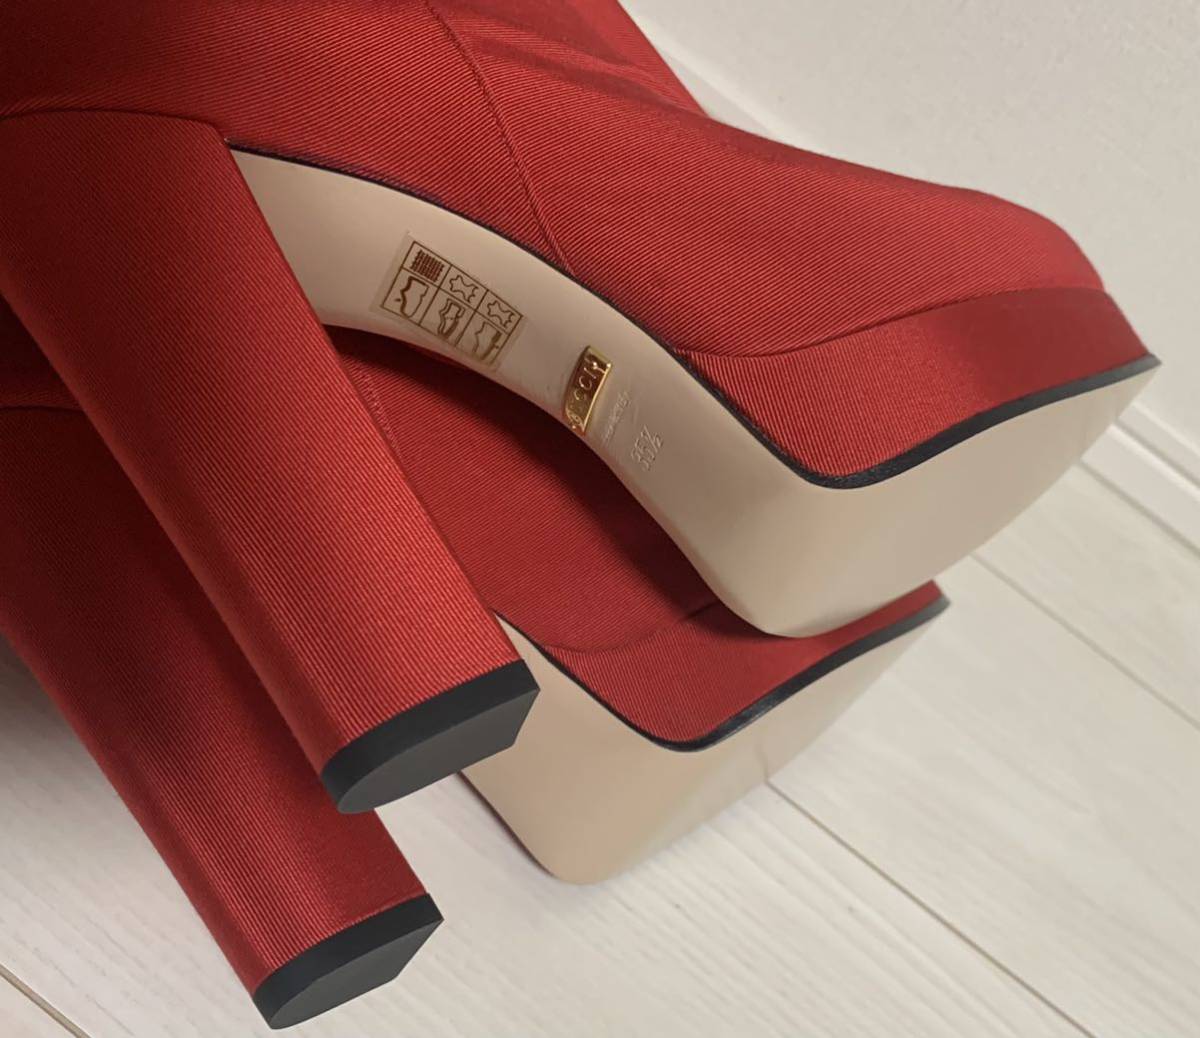  новый товар не использовался Gucci женский сапоги 35 половина примерно 22~23cm Италия производства GUCCI каблук обувь коробка сумка для хранения есть 18 десять тысяч иен mike-re